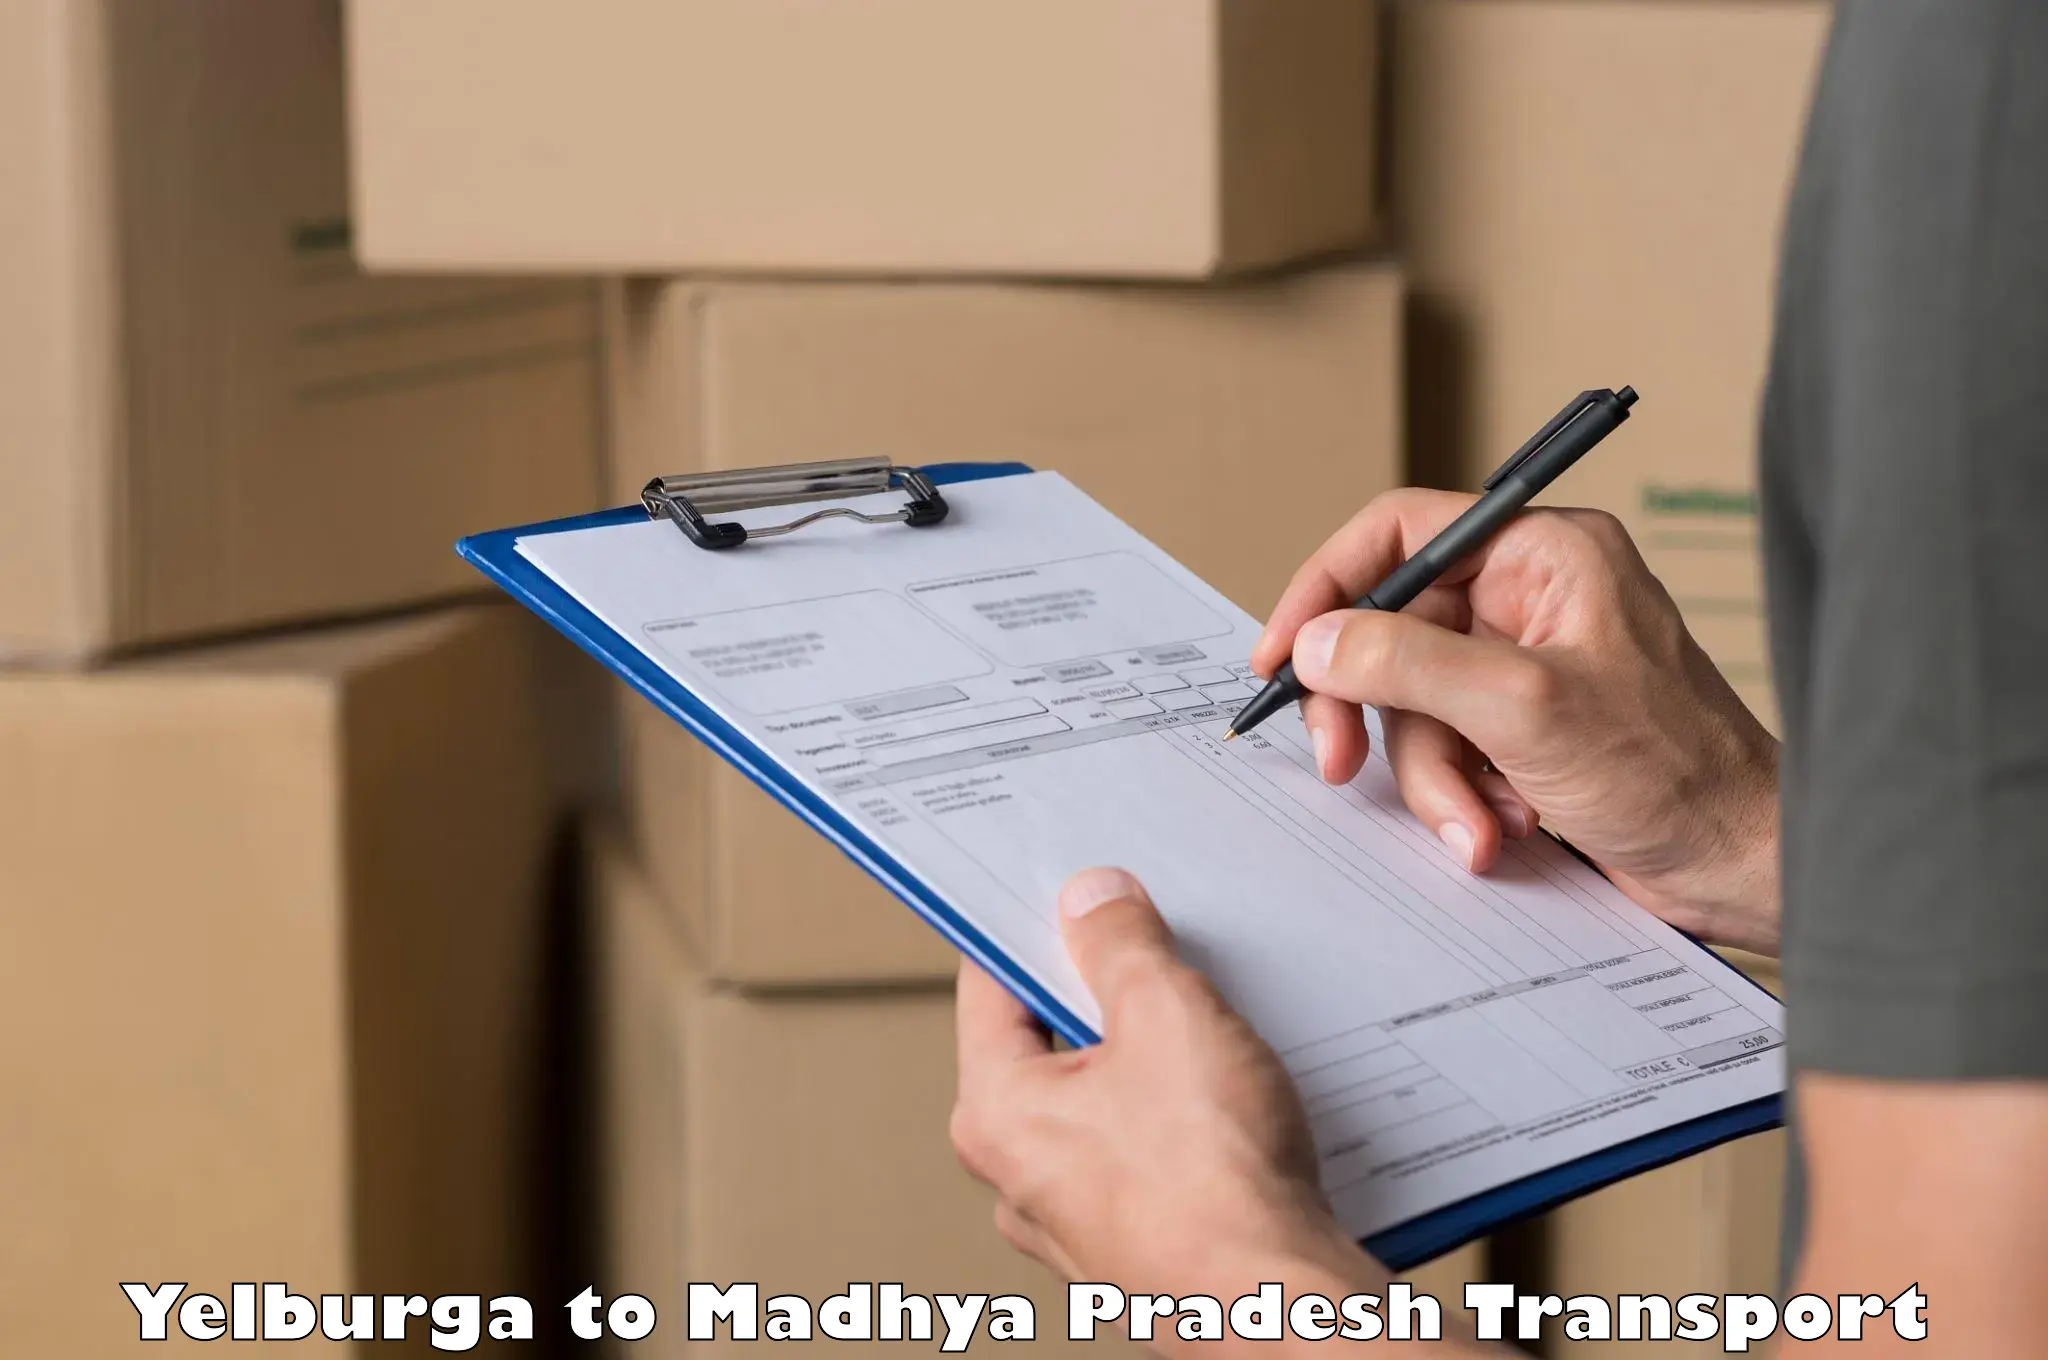 Daily parcel service transport Yelburga to Khurai